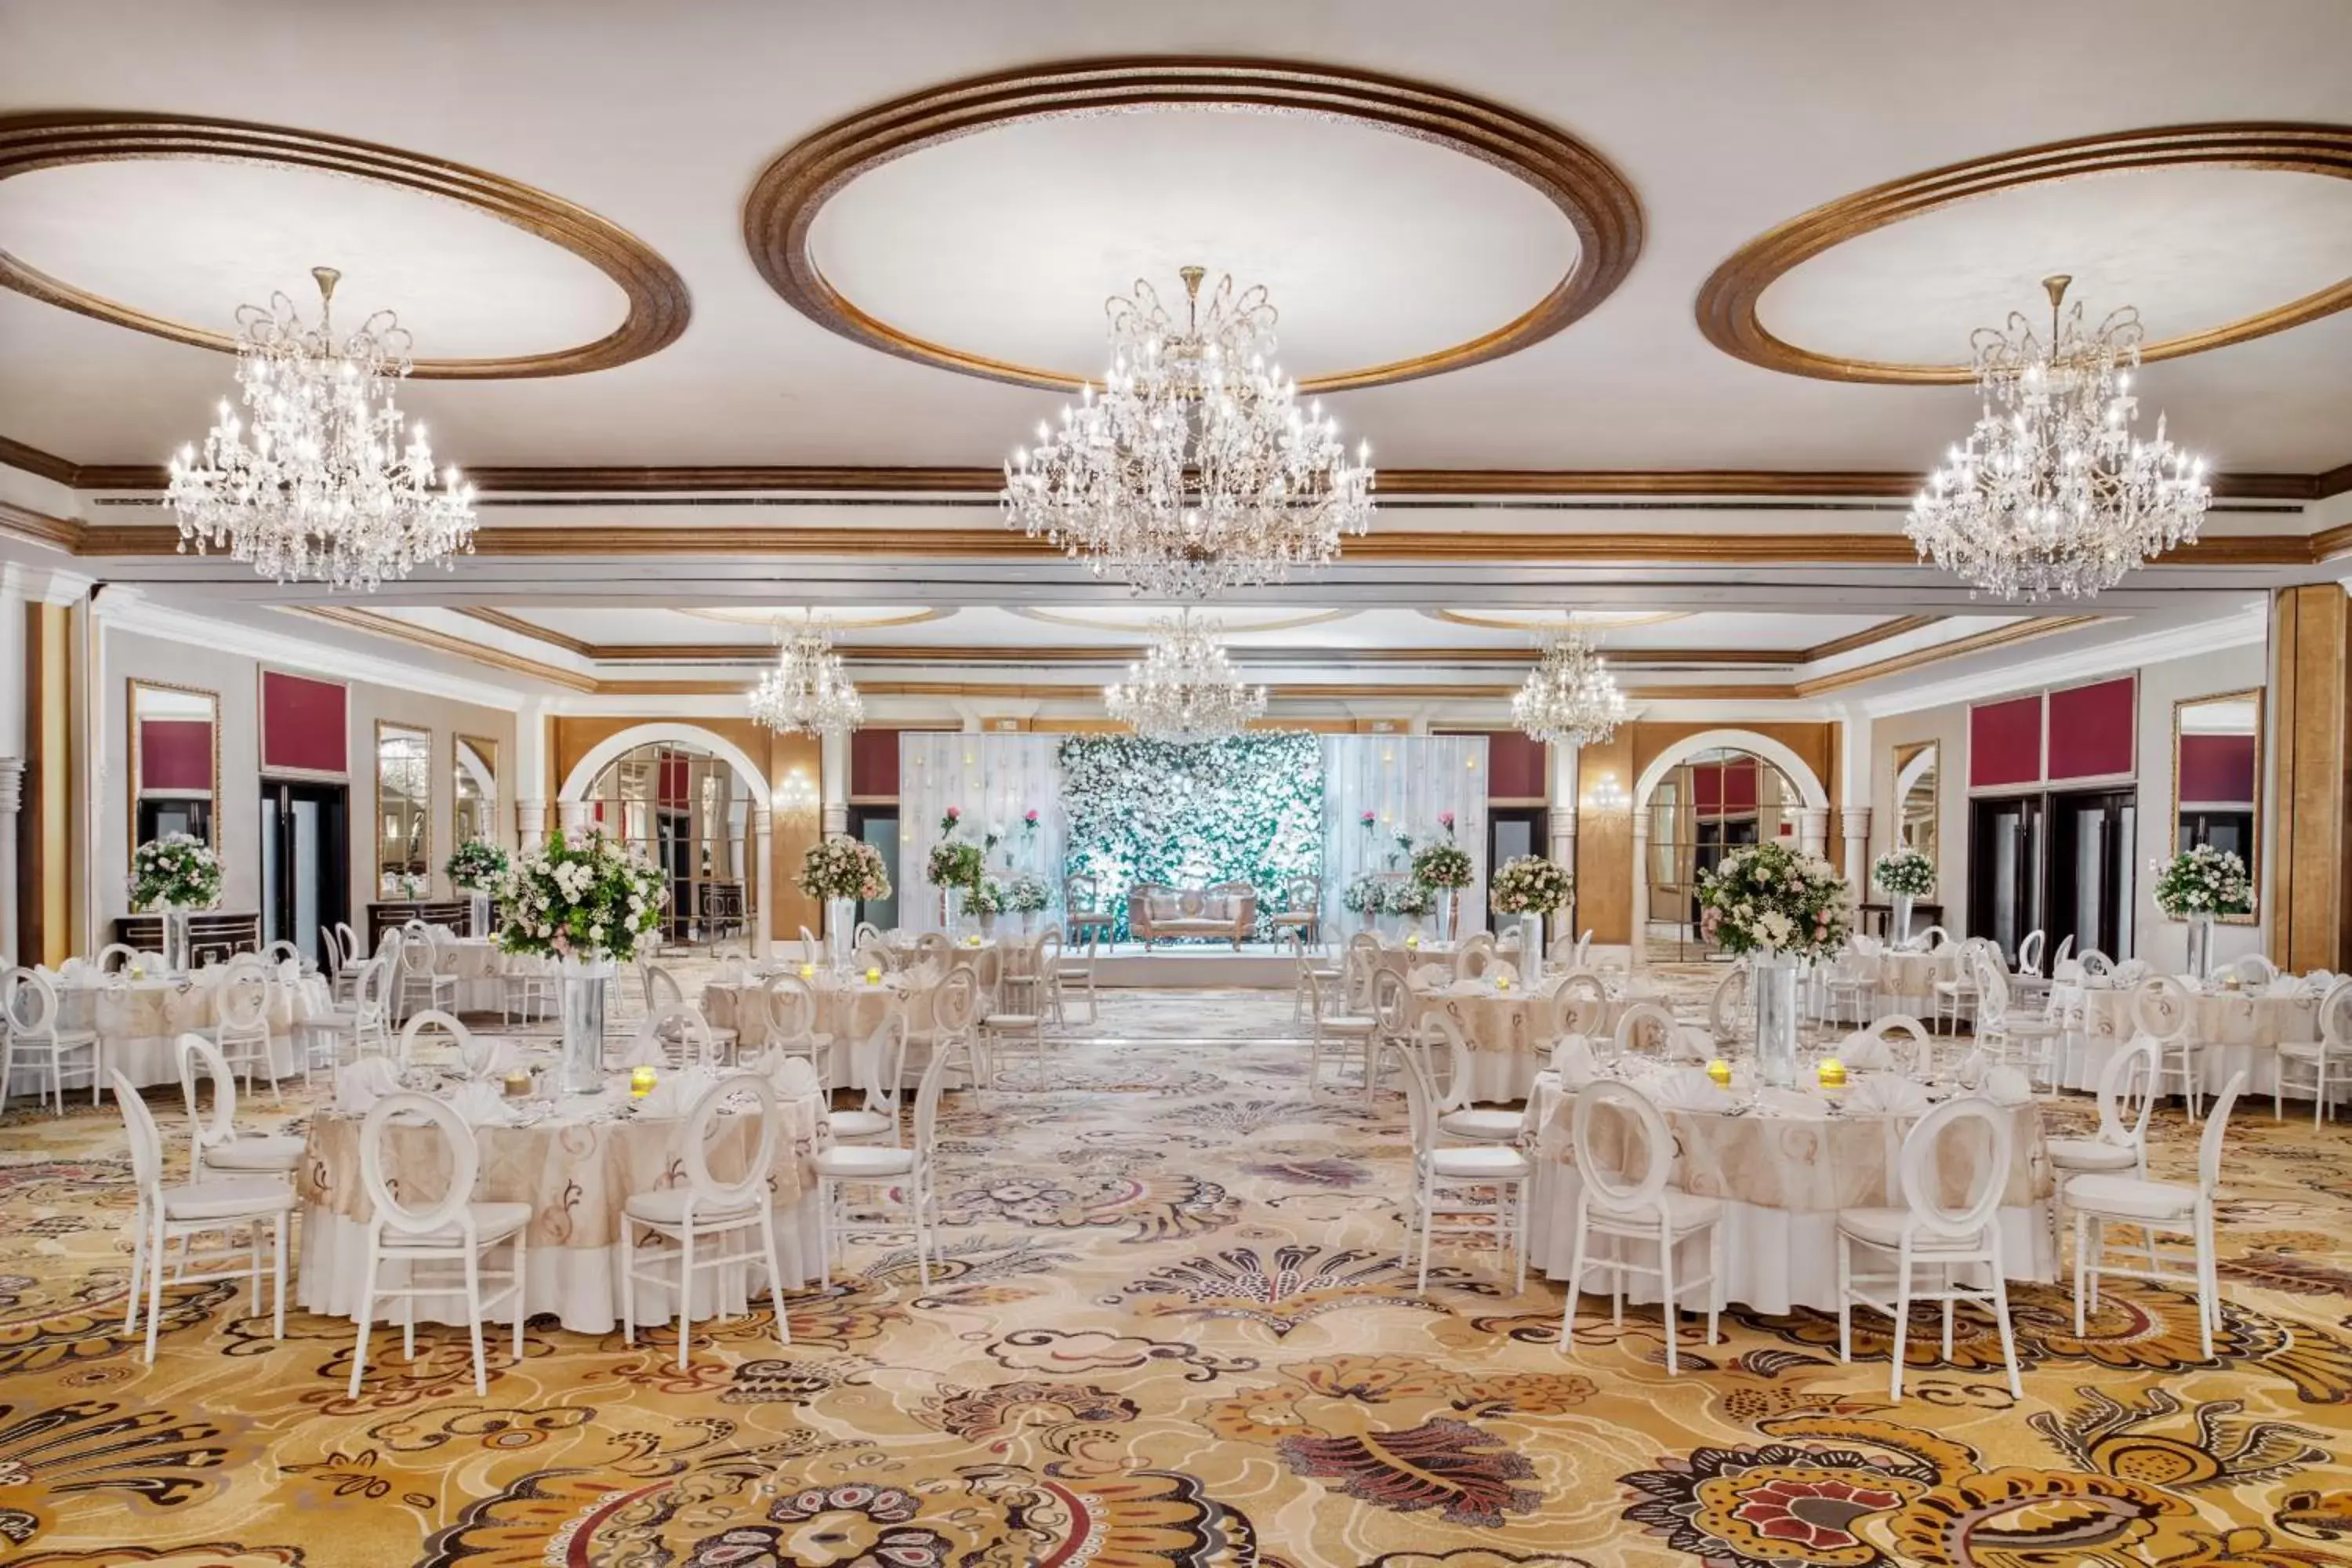 Banquet/Function facilities, Banquet Facilities in Mövenpick Hotel Karachi